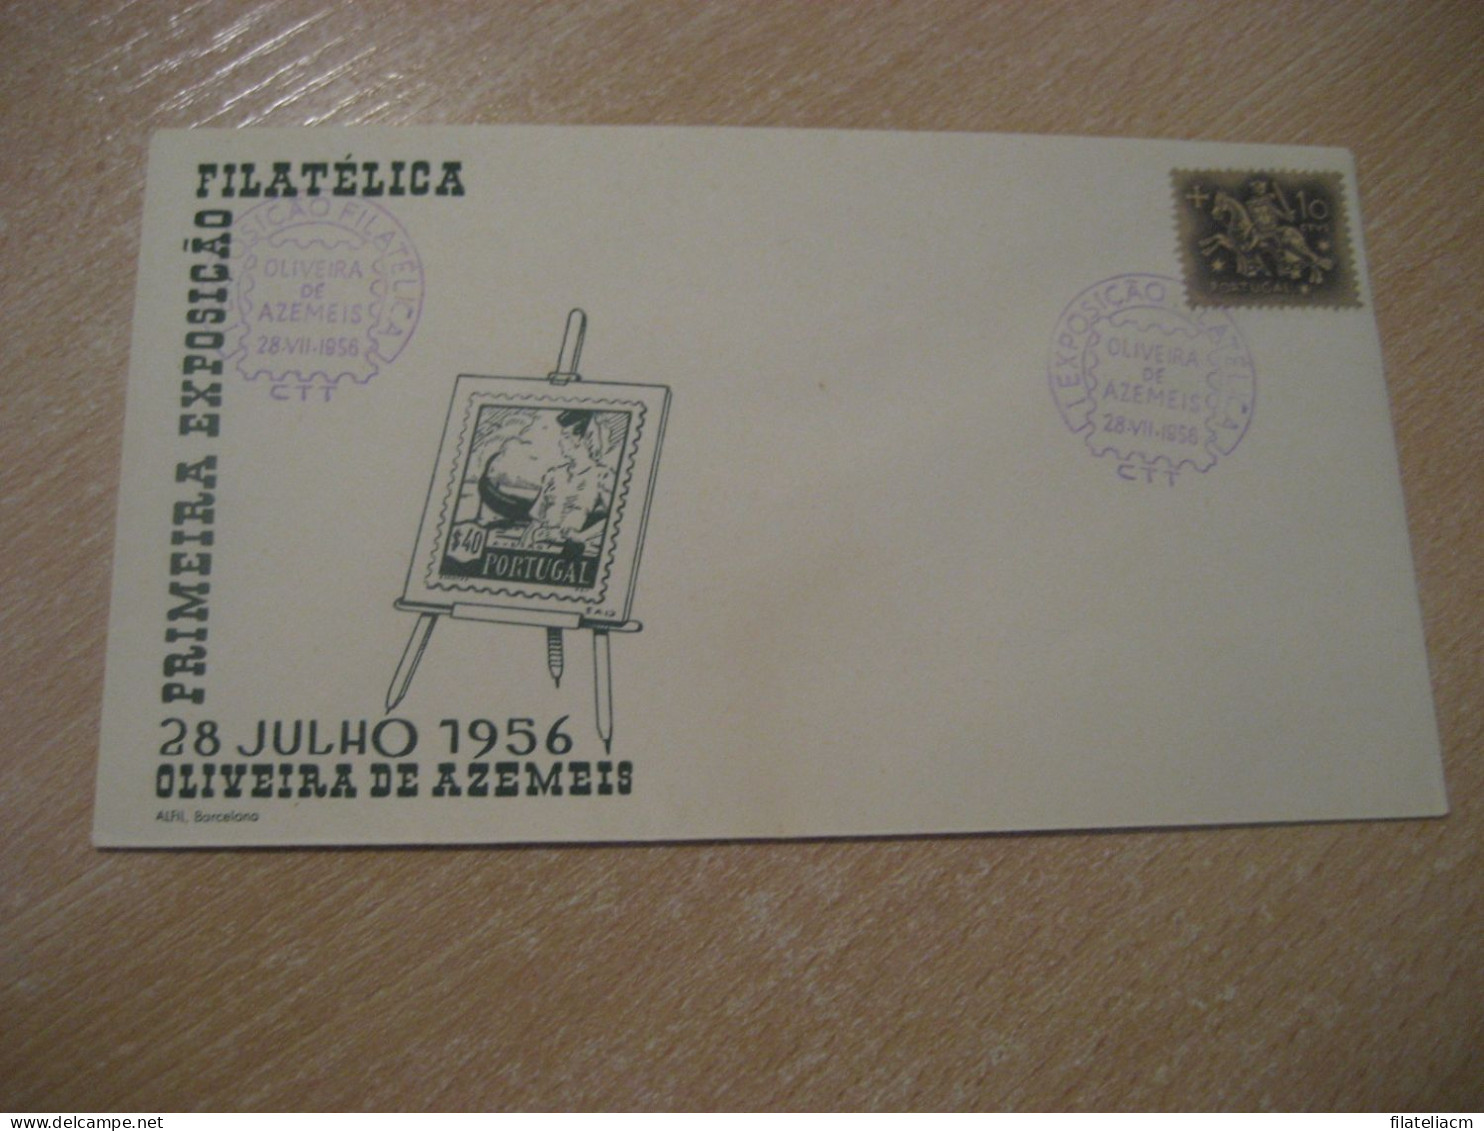 OLIVEIRA DE AZEMEIS 1956 Expo Filatelica Cancel Cover PORTUGAL - Briefe U. Dokumente